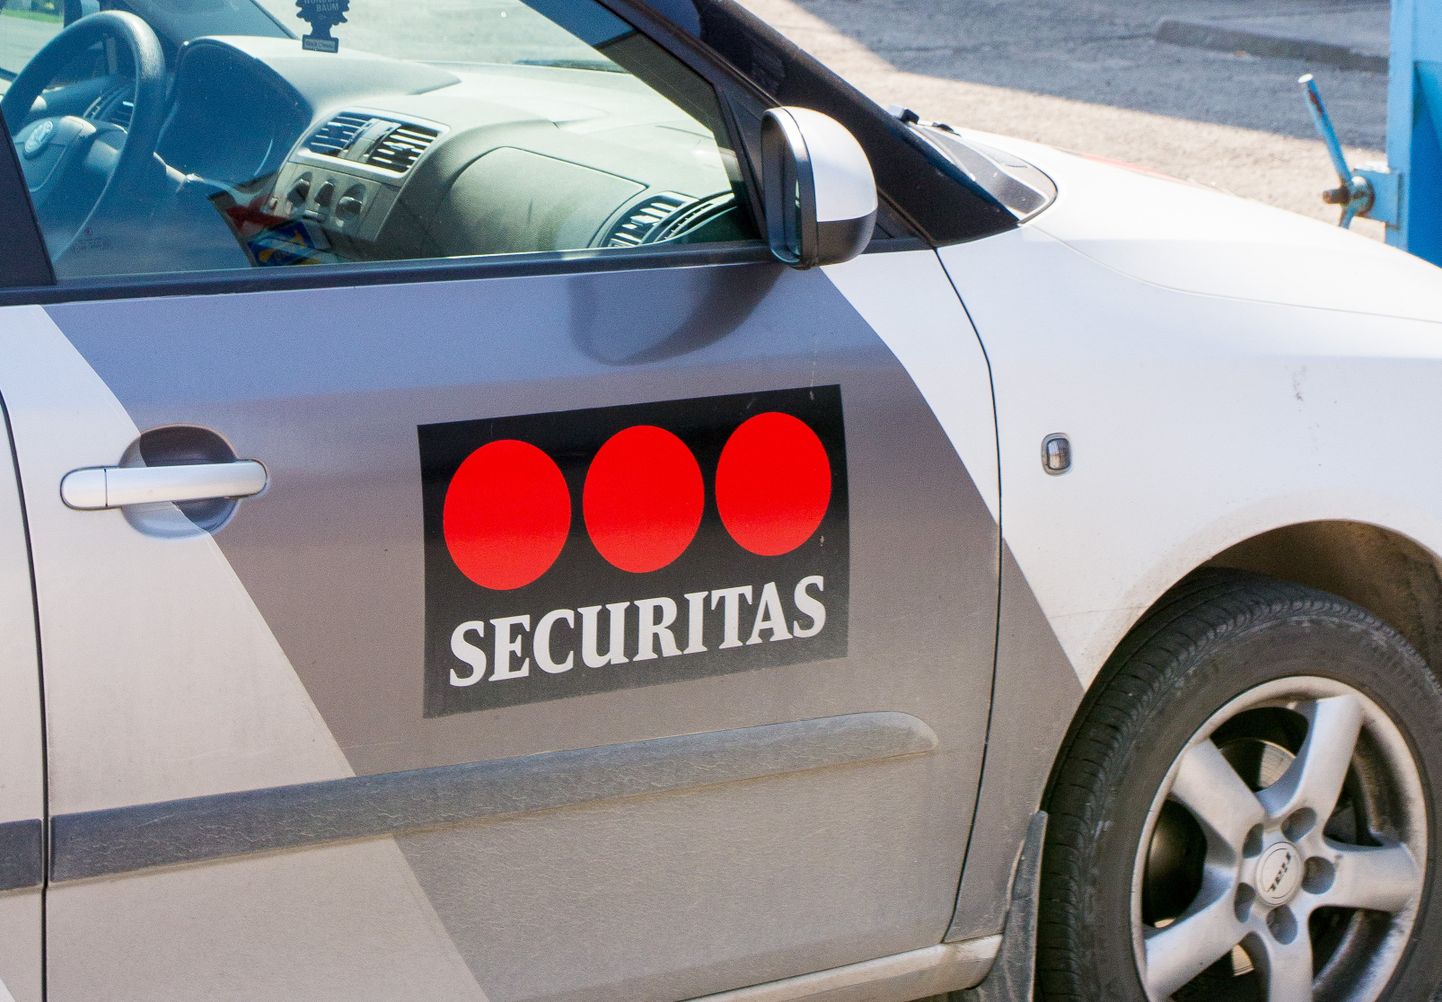 Turvafirma Securitas logo ettevõtte autol Eestis.